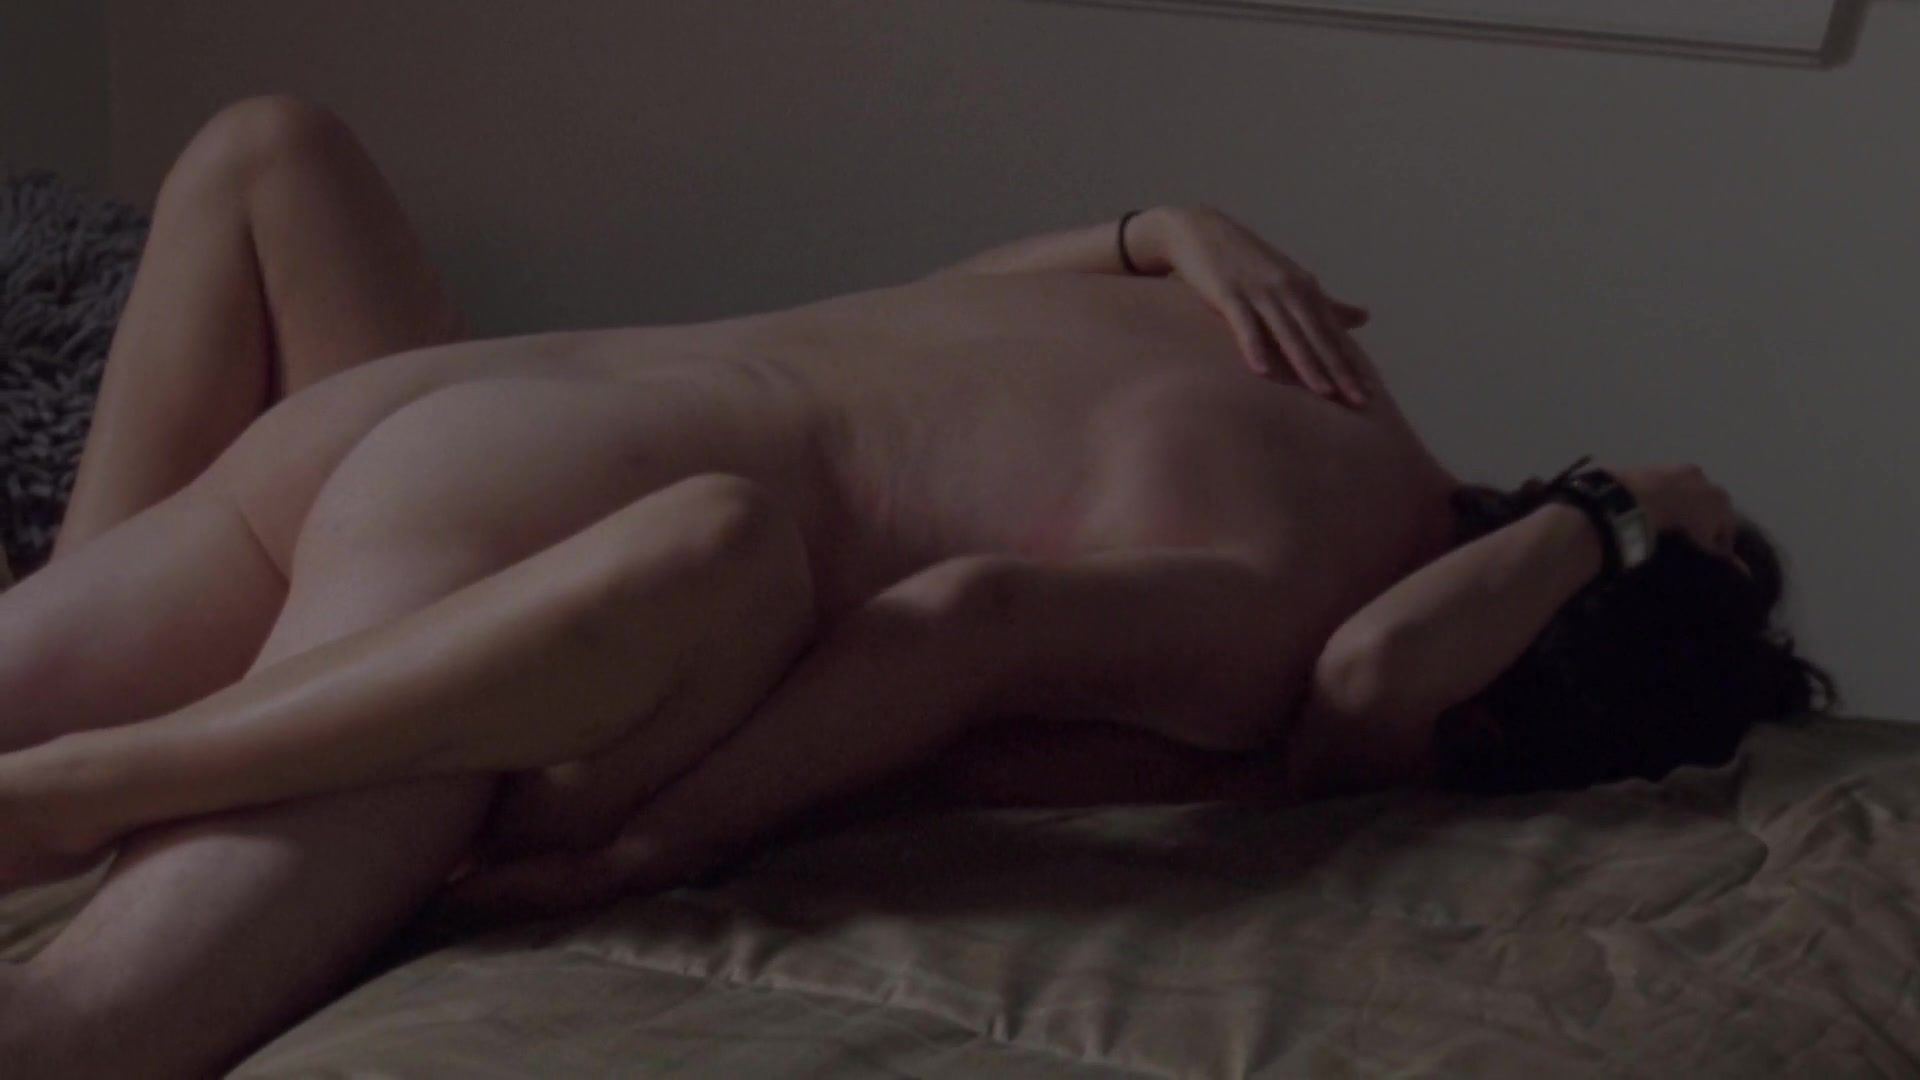 Sexu Michelle Borth nude - Tell Me You Love Me s01 (2007) Sfico